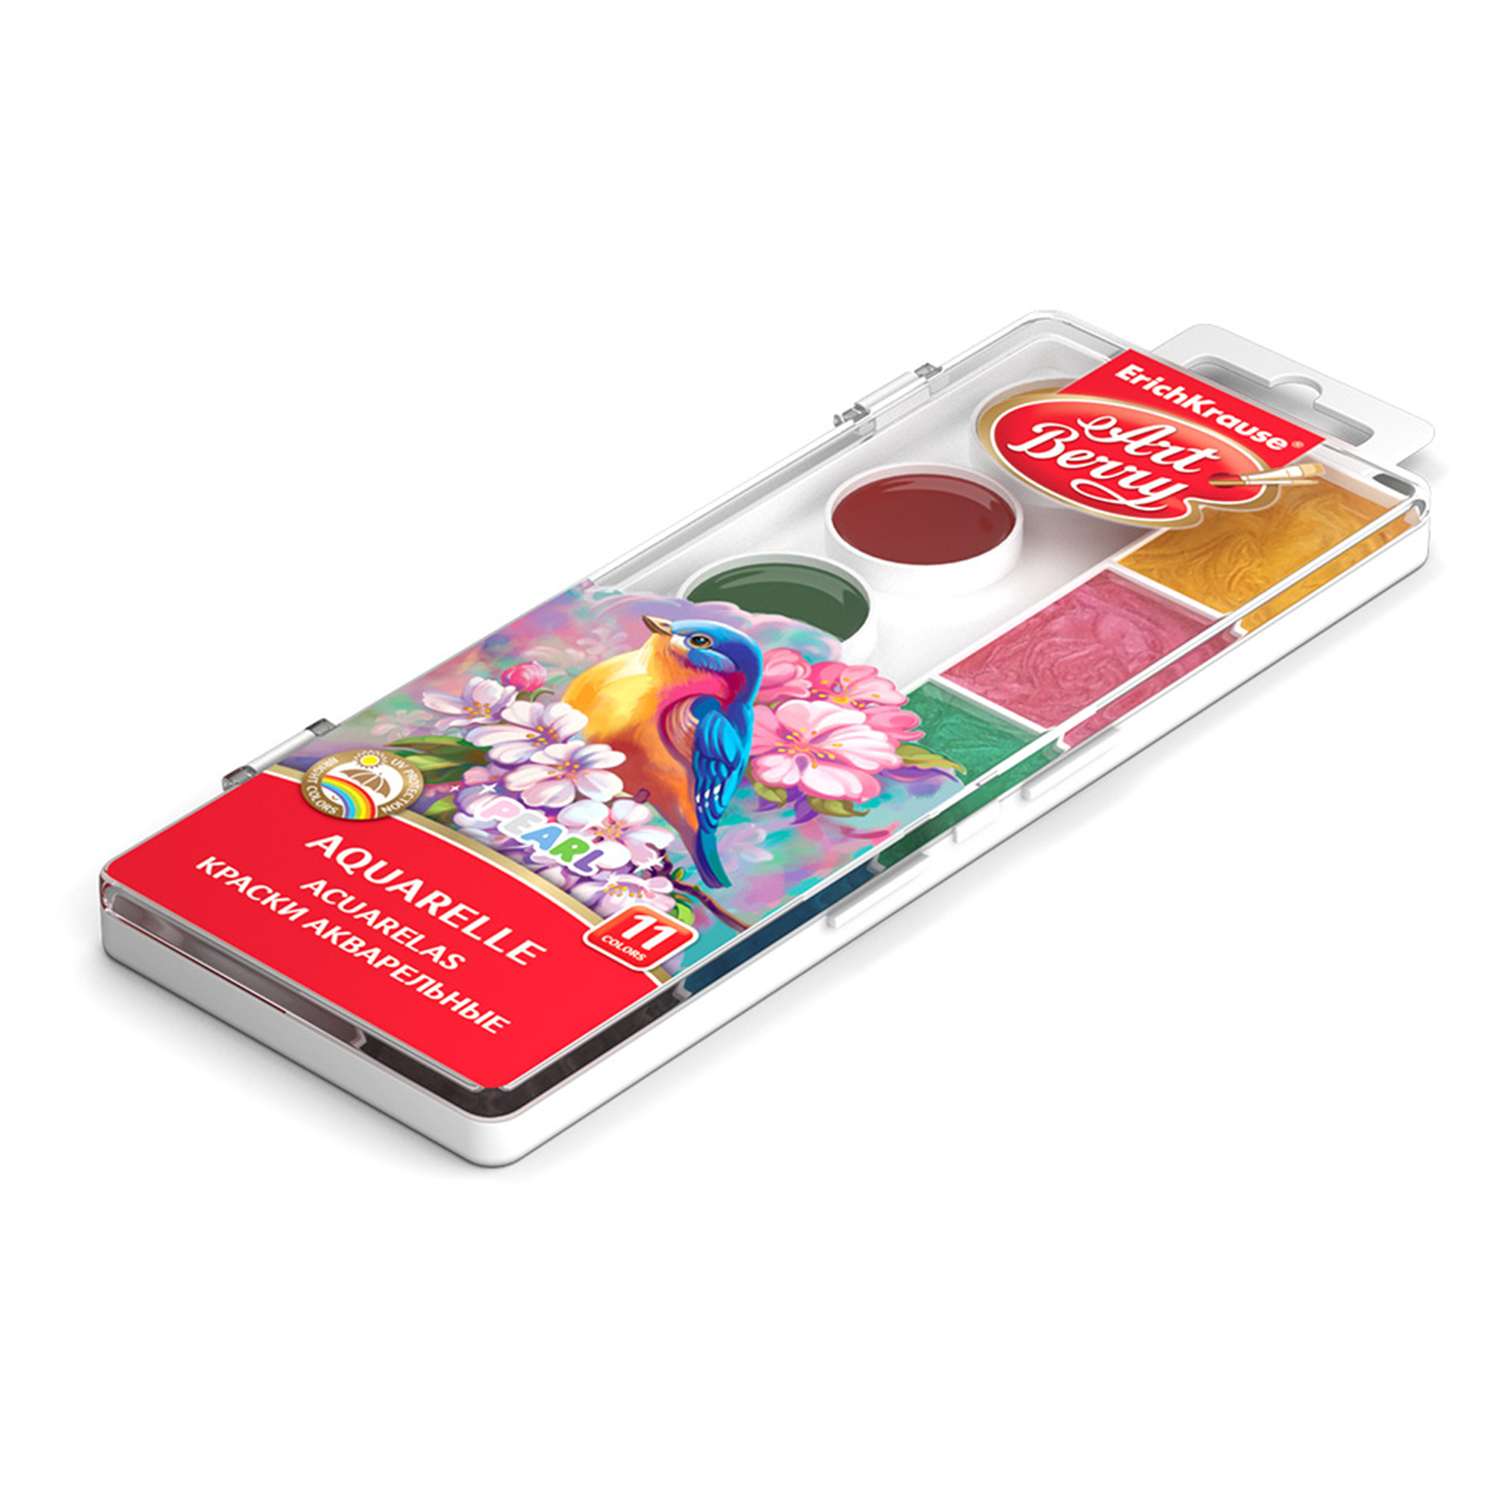 Краски ArtBerry Pearl с УФ защитой яркости 11цветов 53407 - фото 2